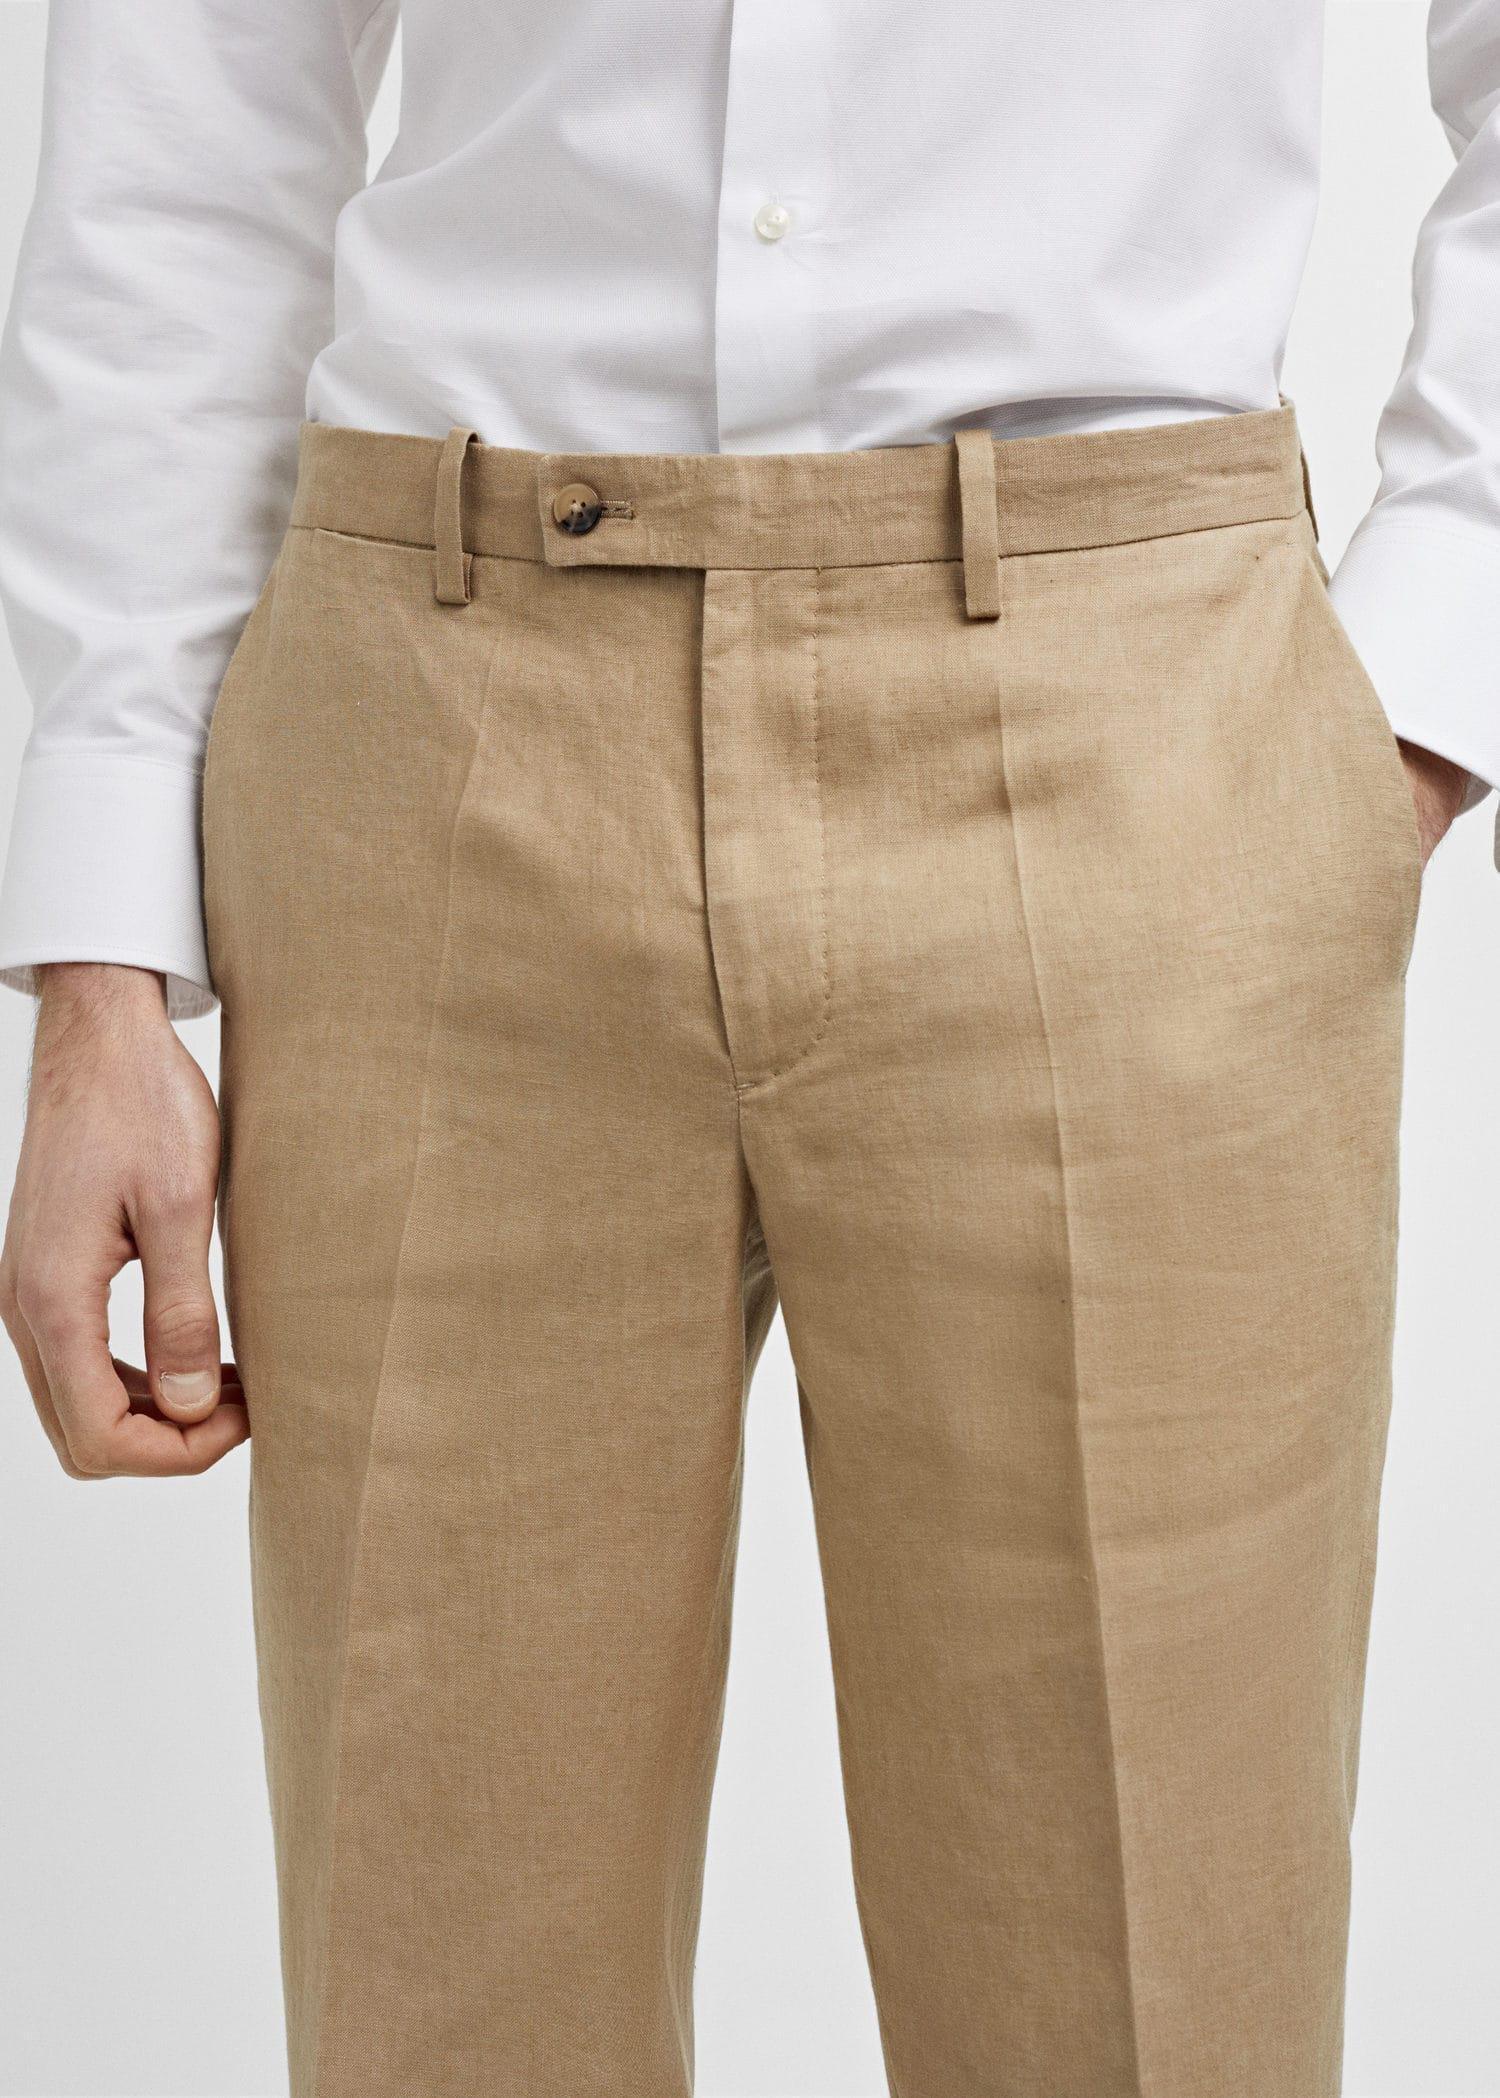 Mango - Brown Slim Fit Suit Pants Linen